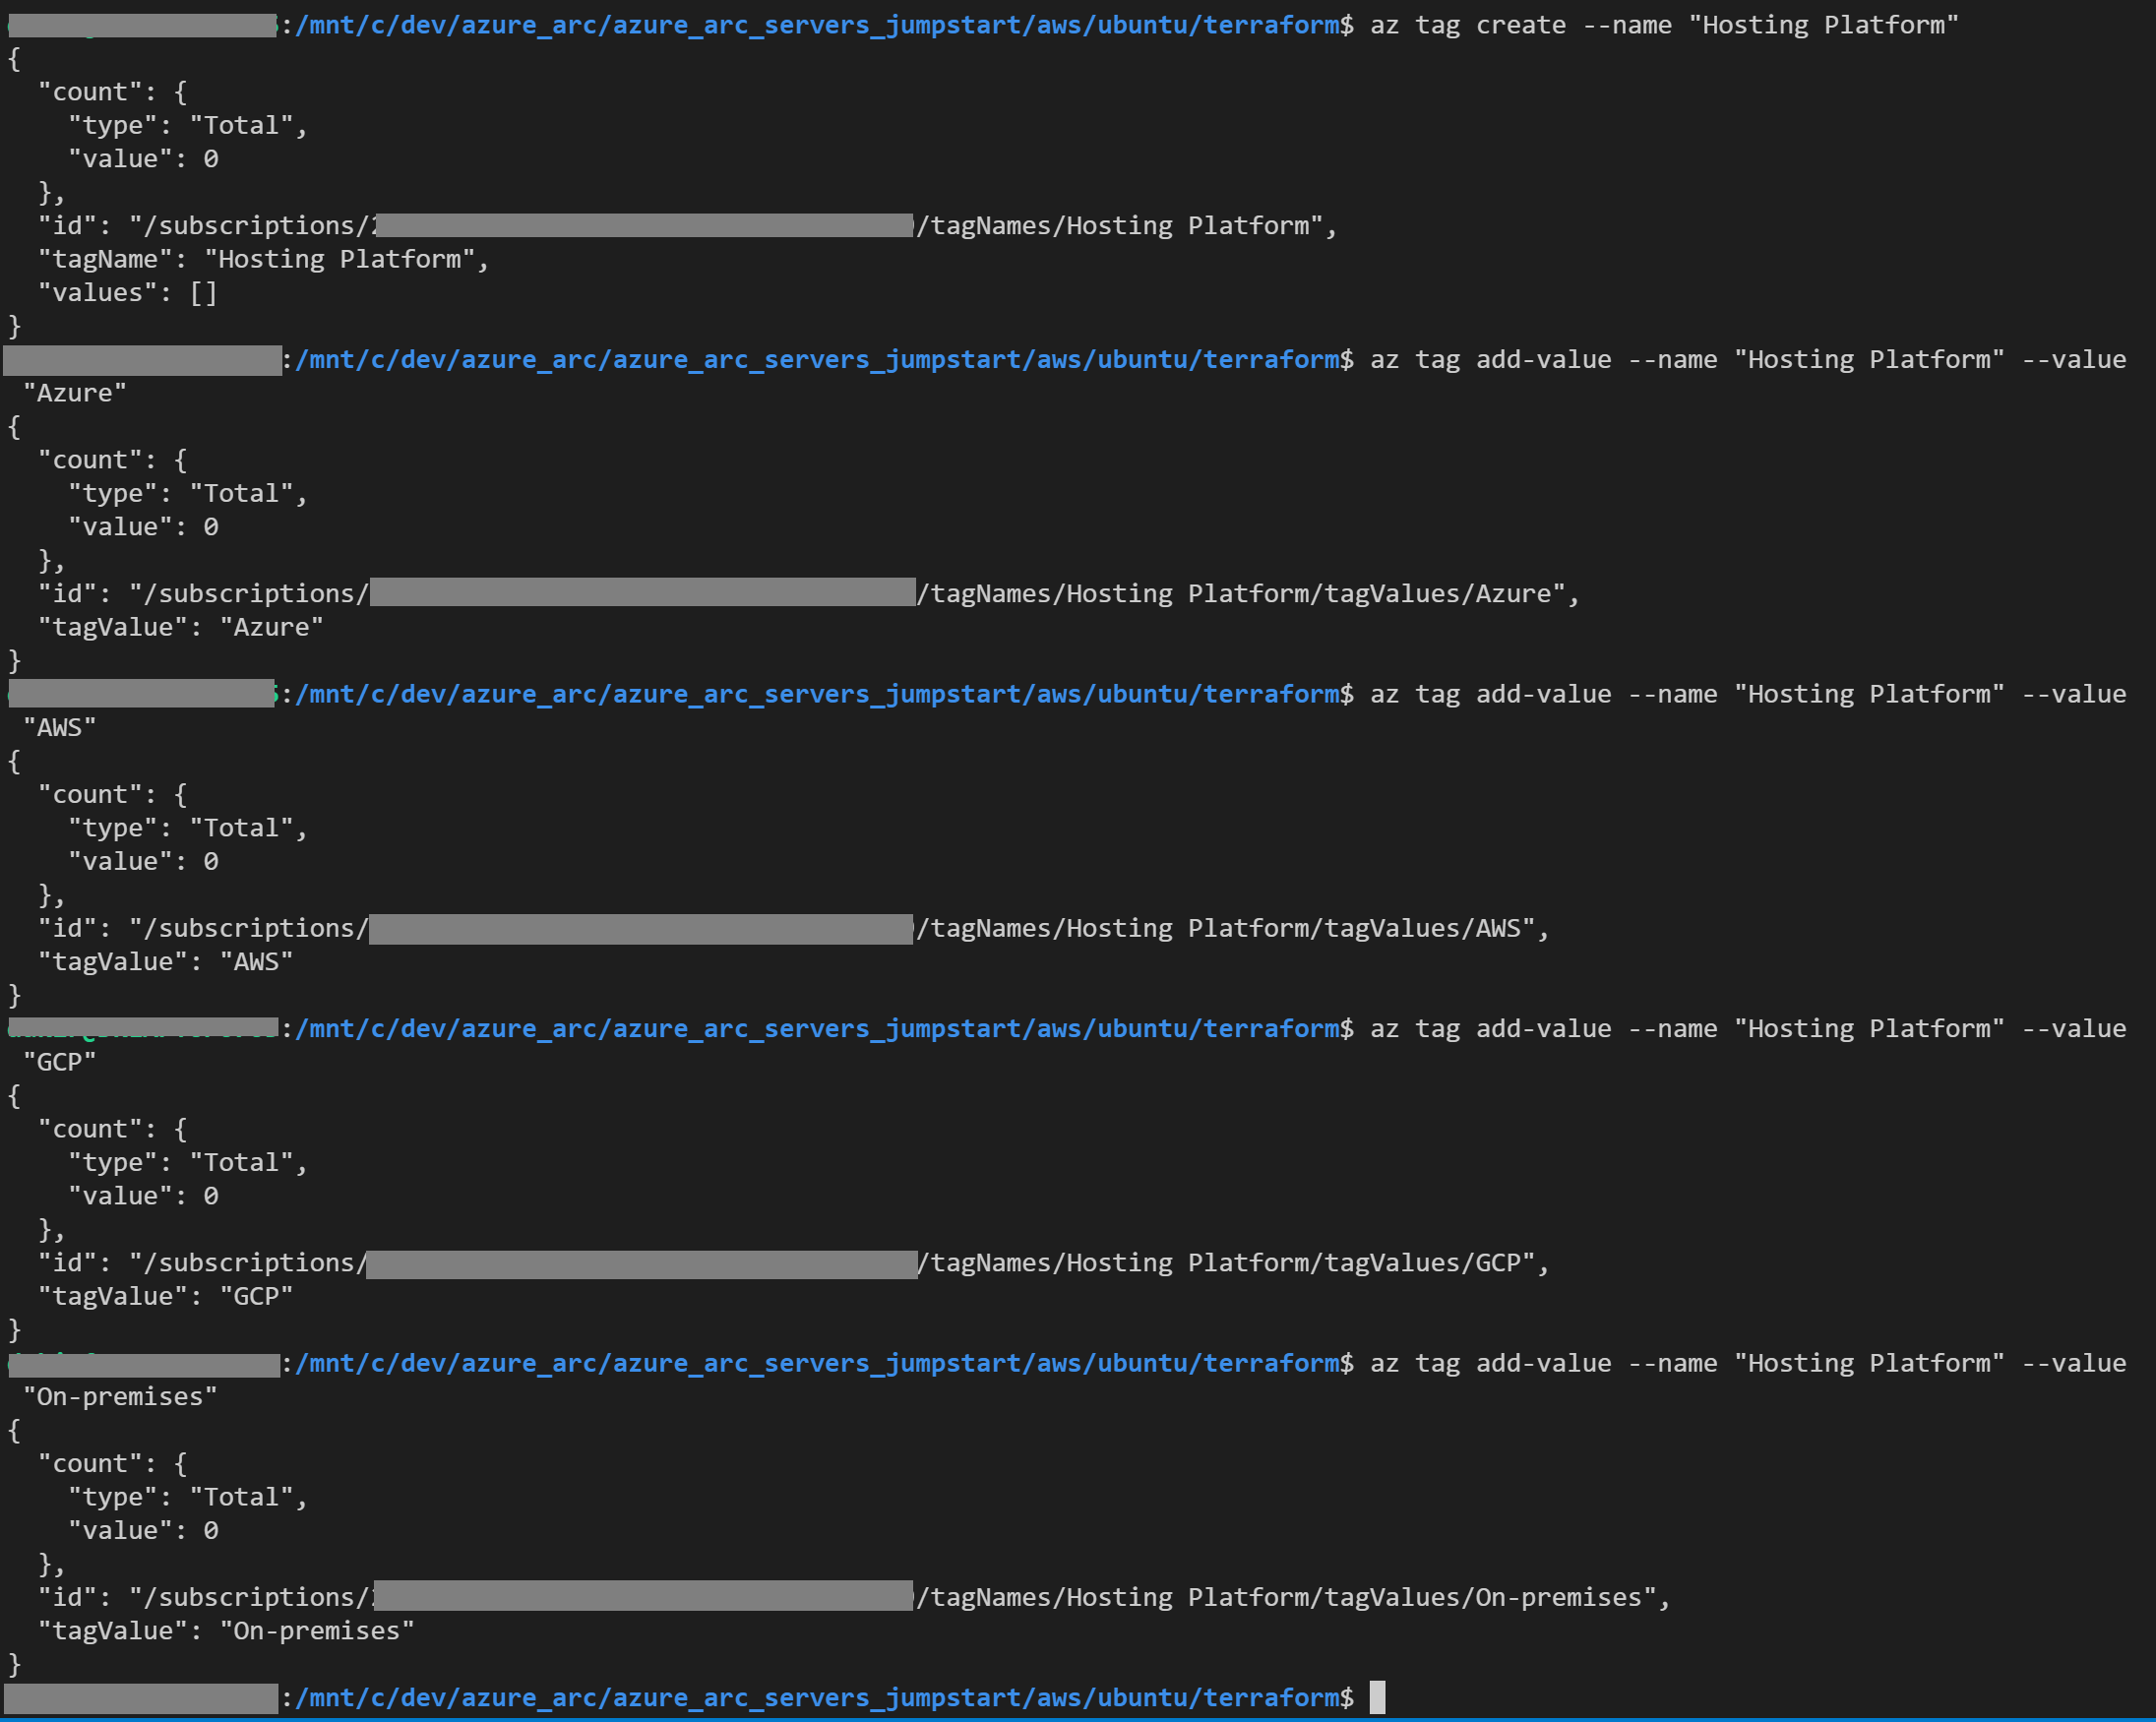 Screenshot di un output del comando az tag create.